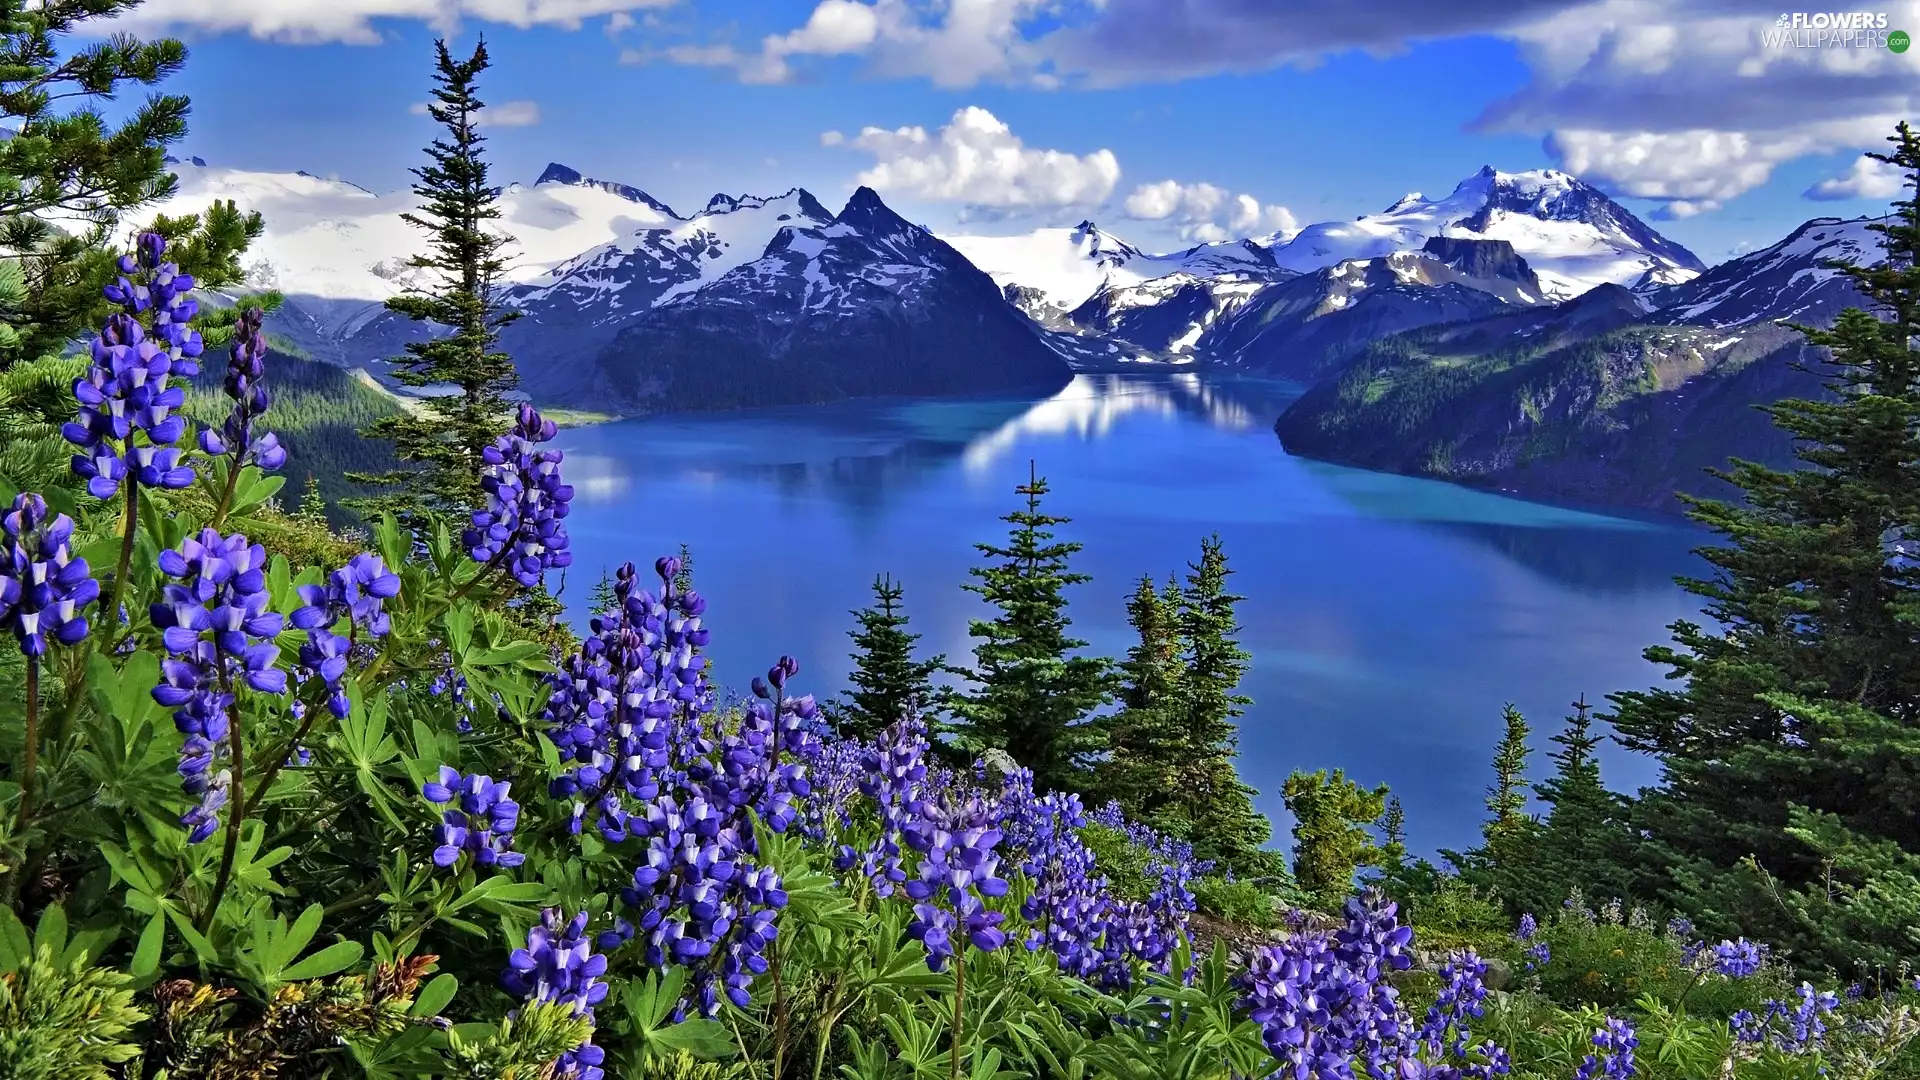 Mountains, Flowers, Lupin, lake